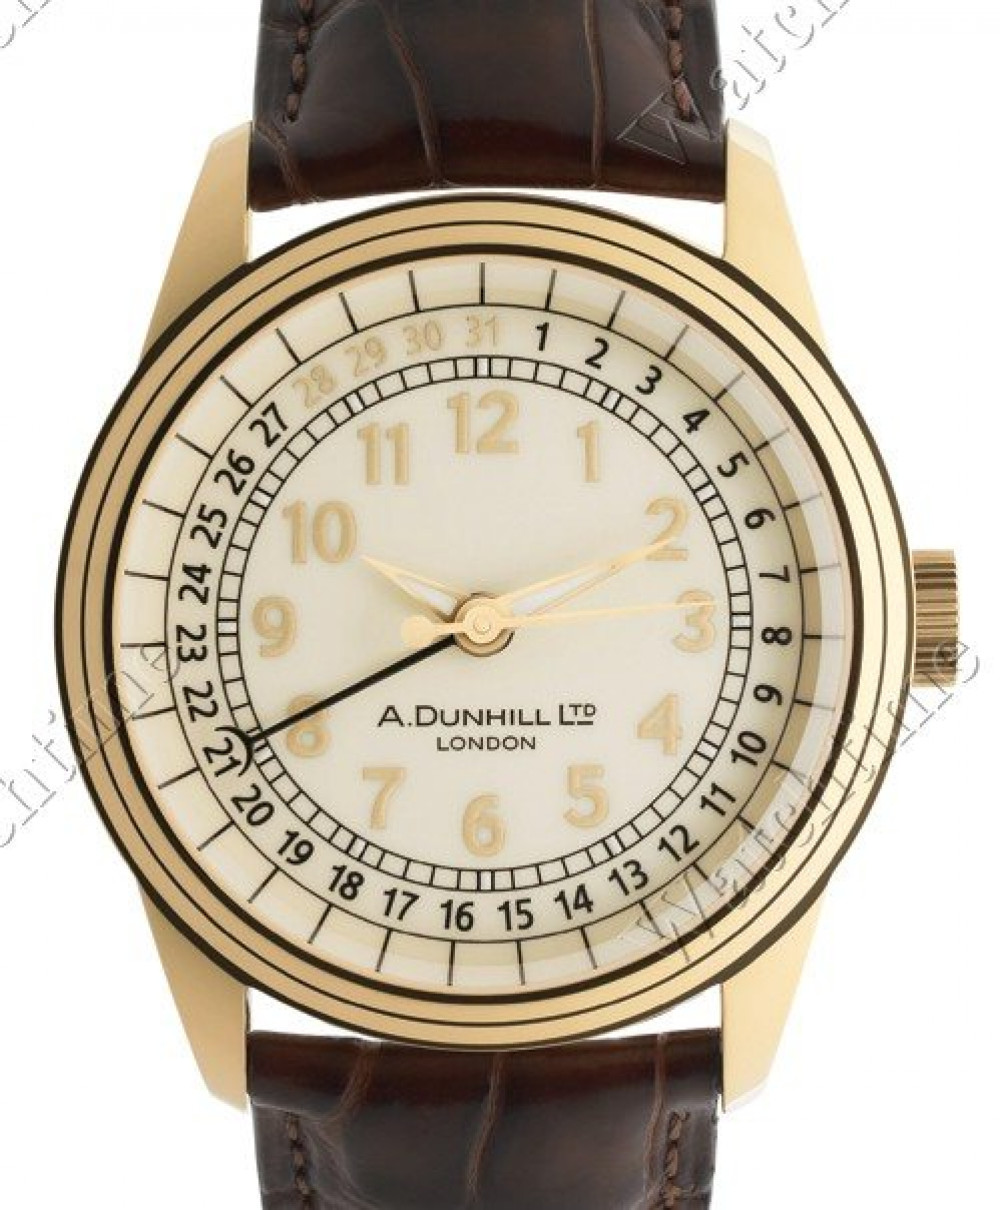 Zegarek firmy Dunhill, model A-Centric